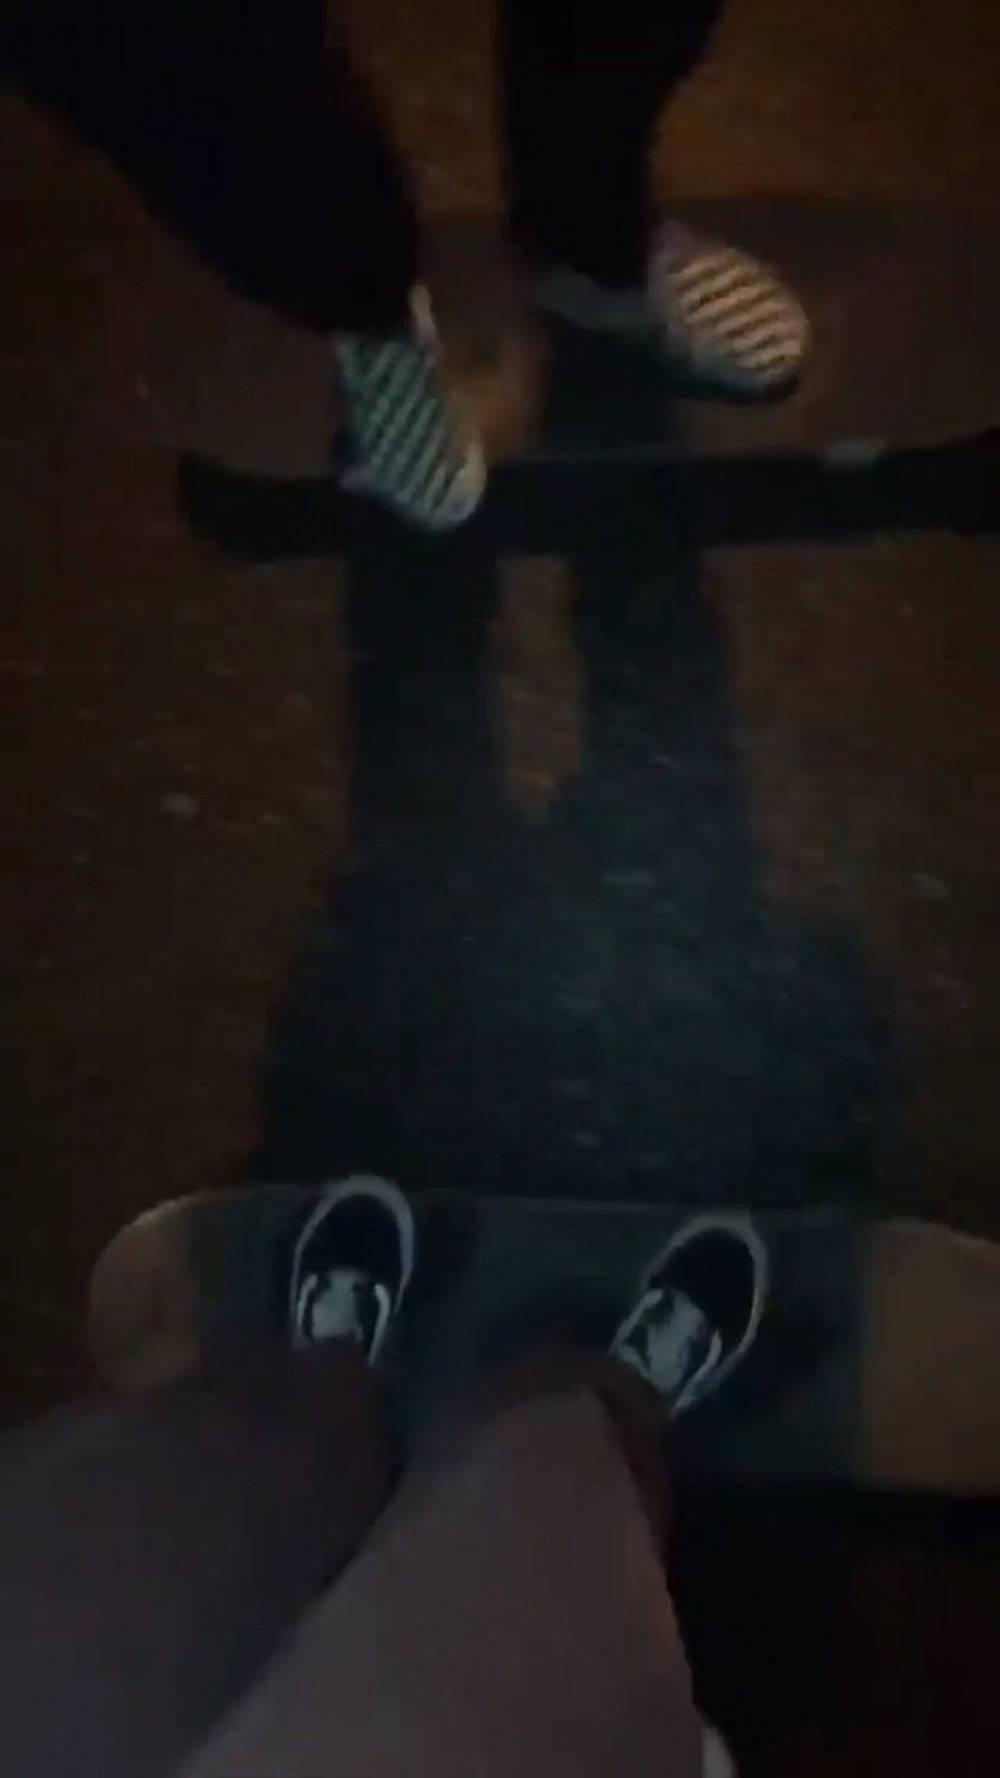 Late Night Skateboarding Vans Shoes Skater Aesthetic Background